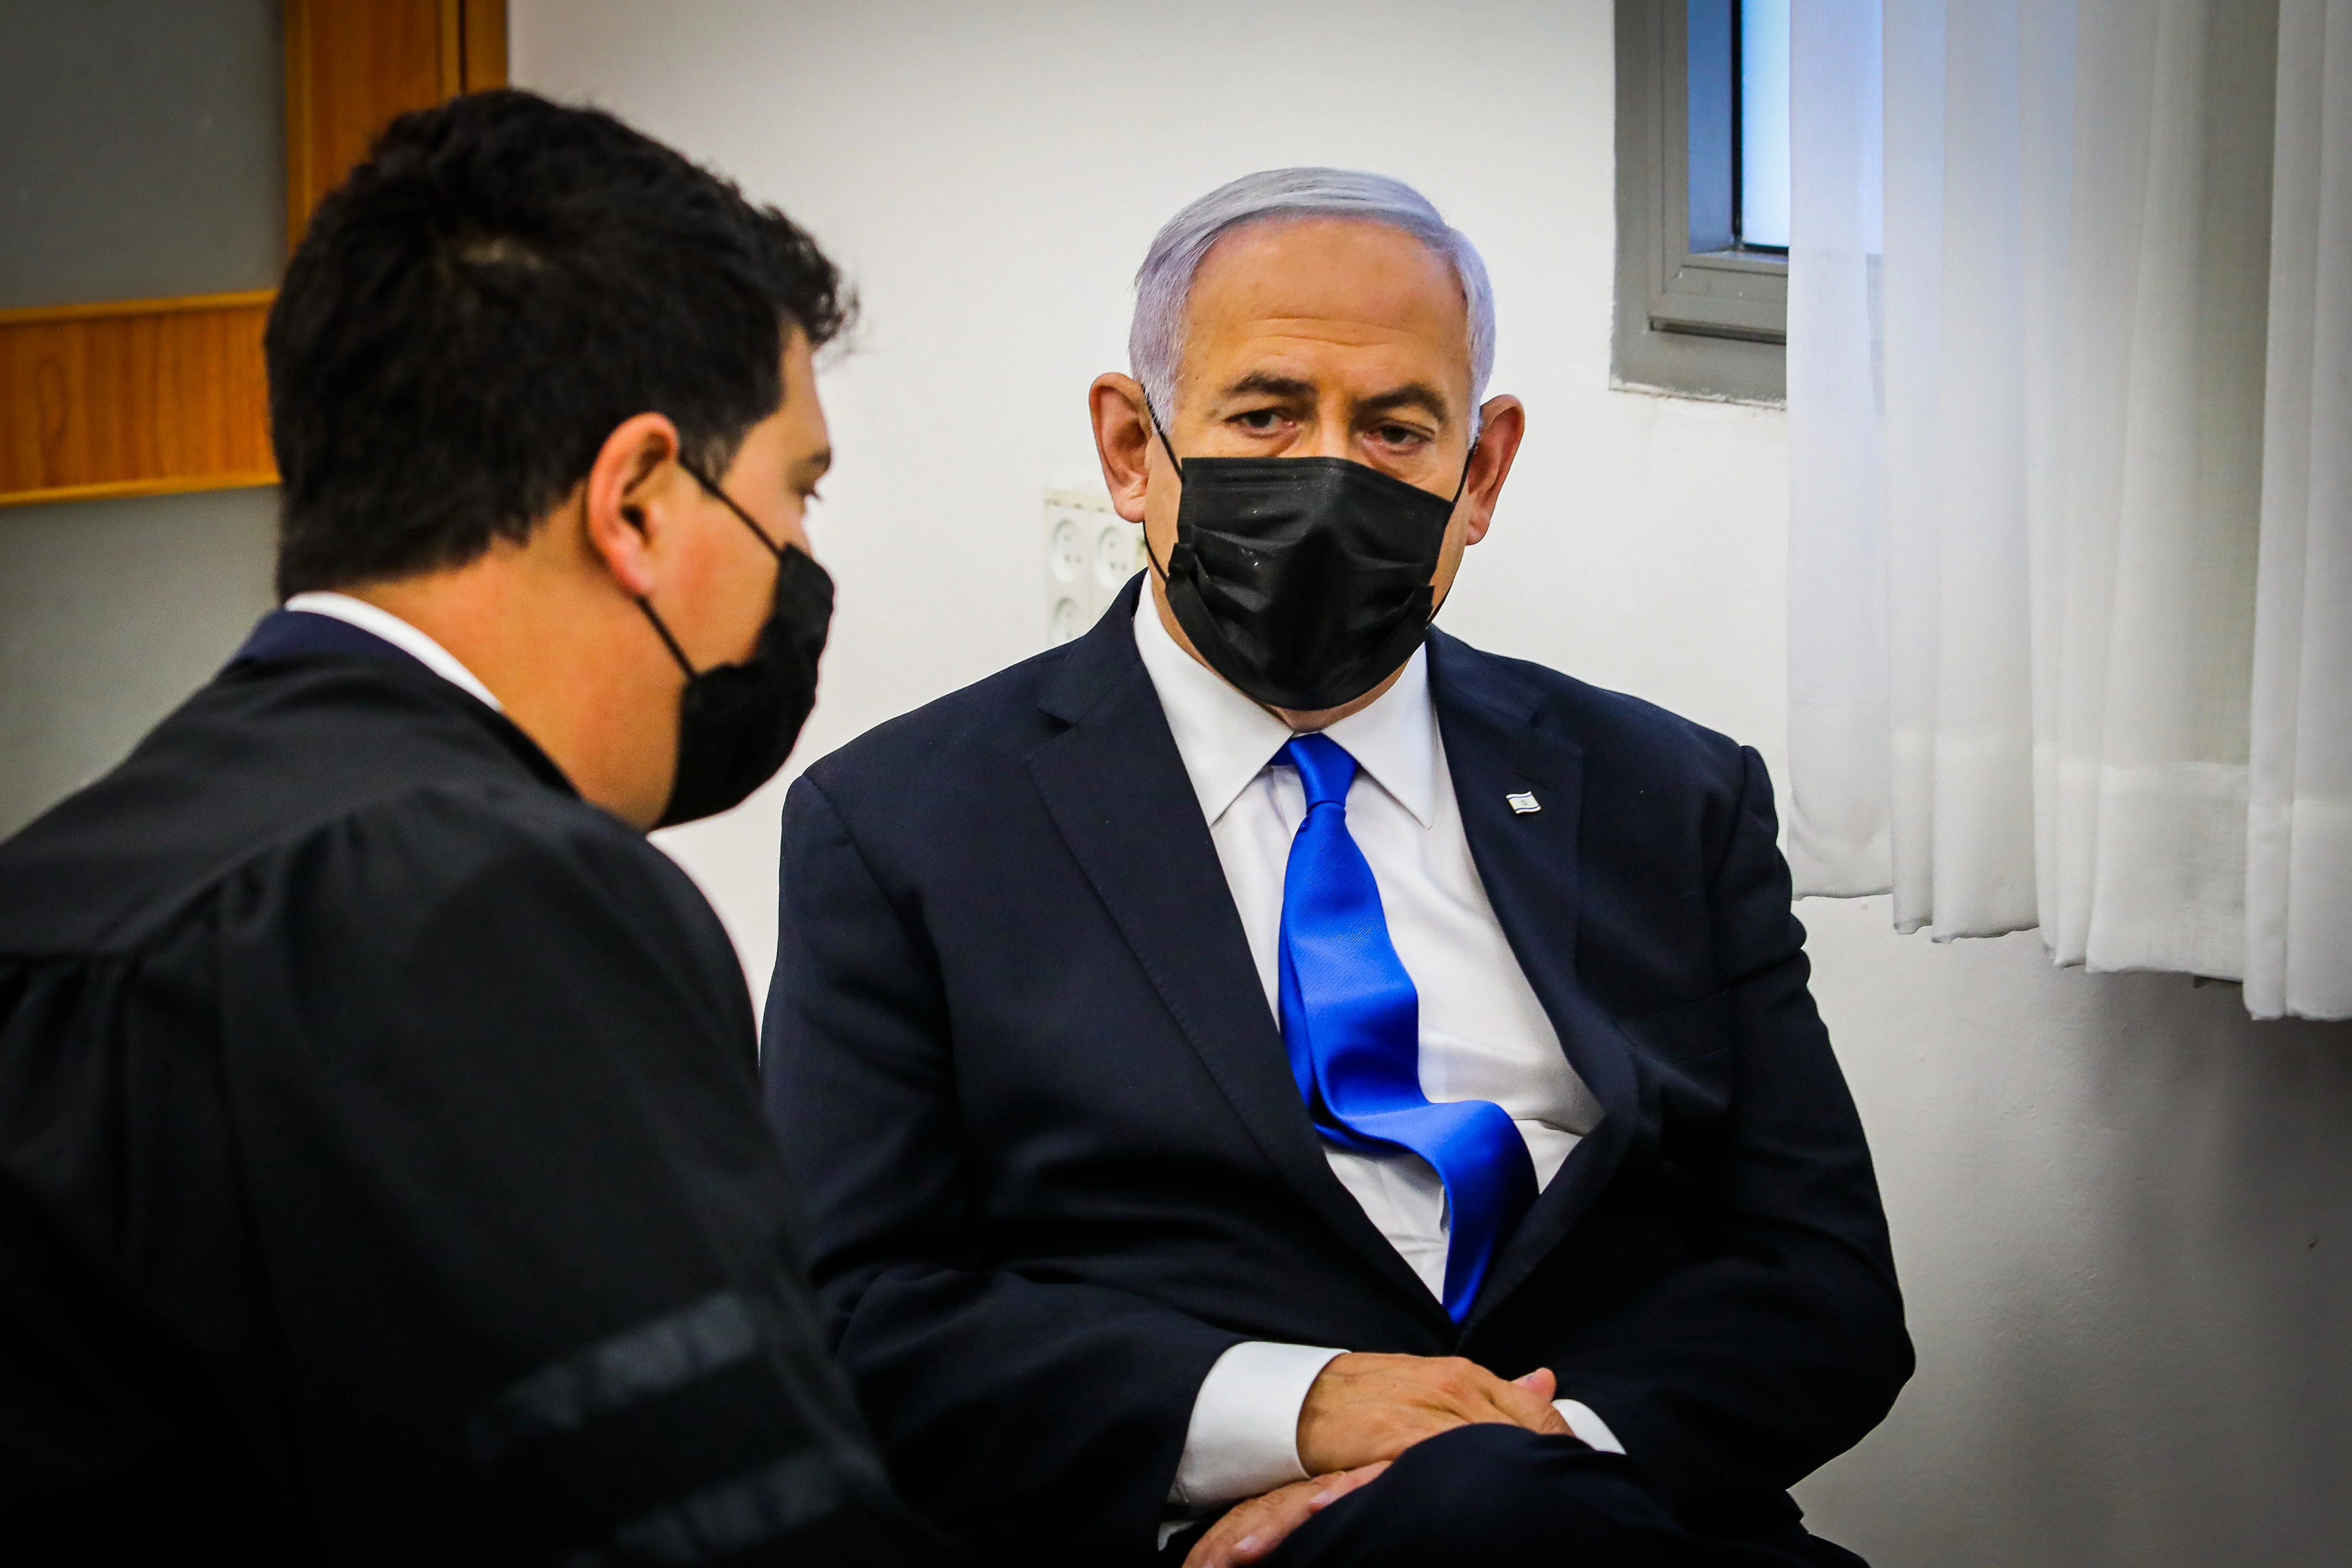 ראש הממשלה בנימין נתניהו יושב באולם בית המשפט המחוזי בירושלים